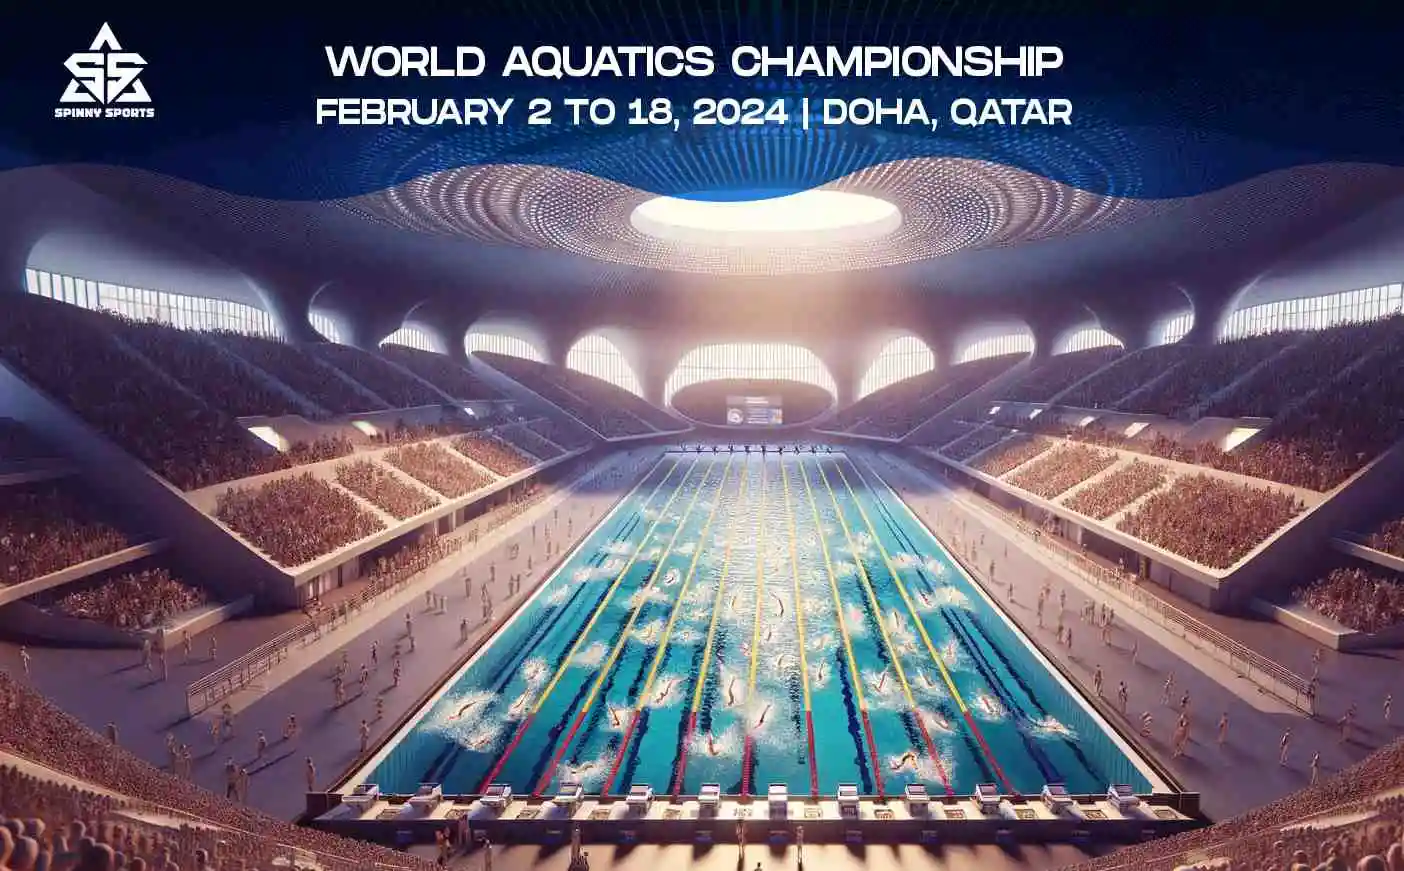 World Aquatics Championships 2024 A Dive into Aquatic Excellence